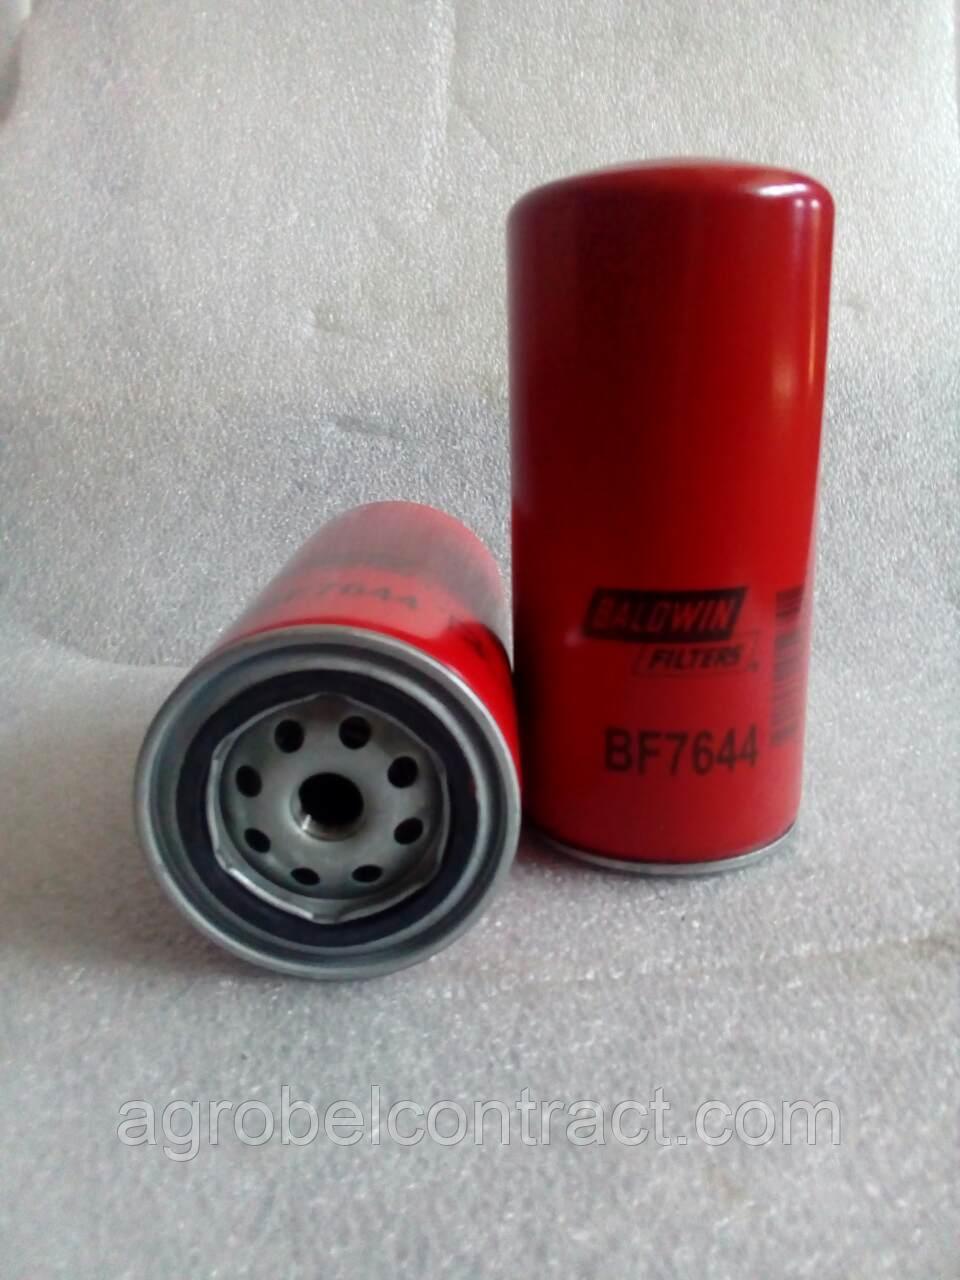 Фильтр топливный (МТЗ-3522ДЦ) BF7644